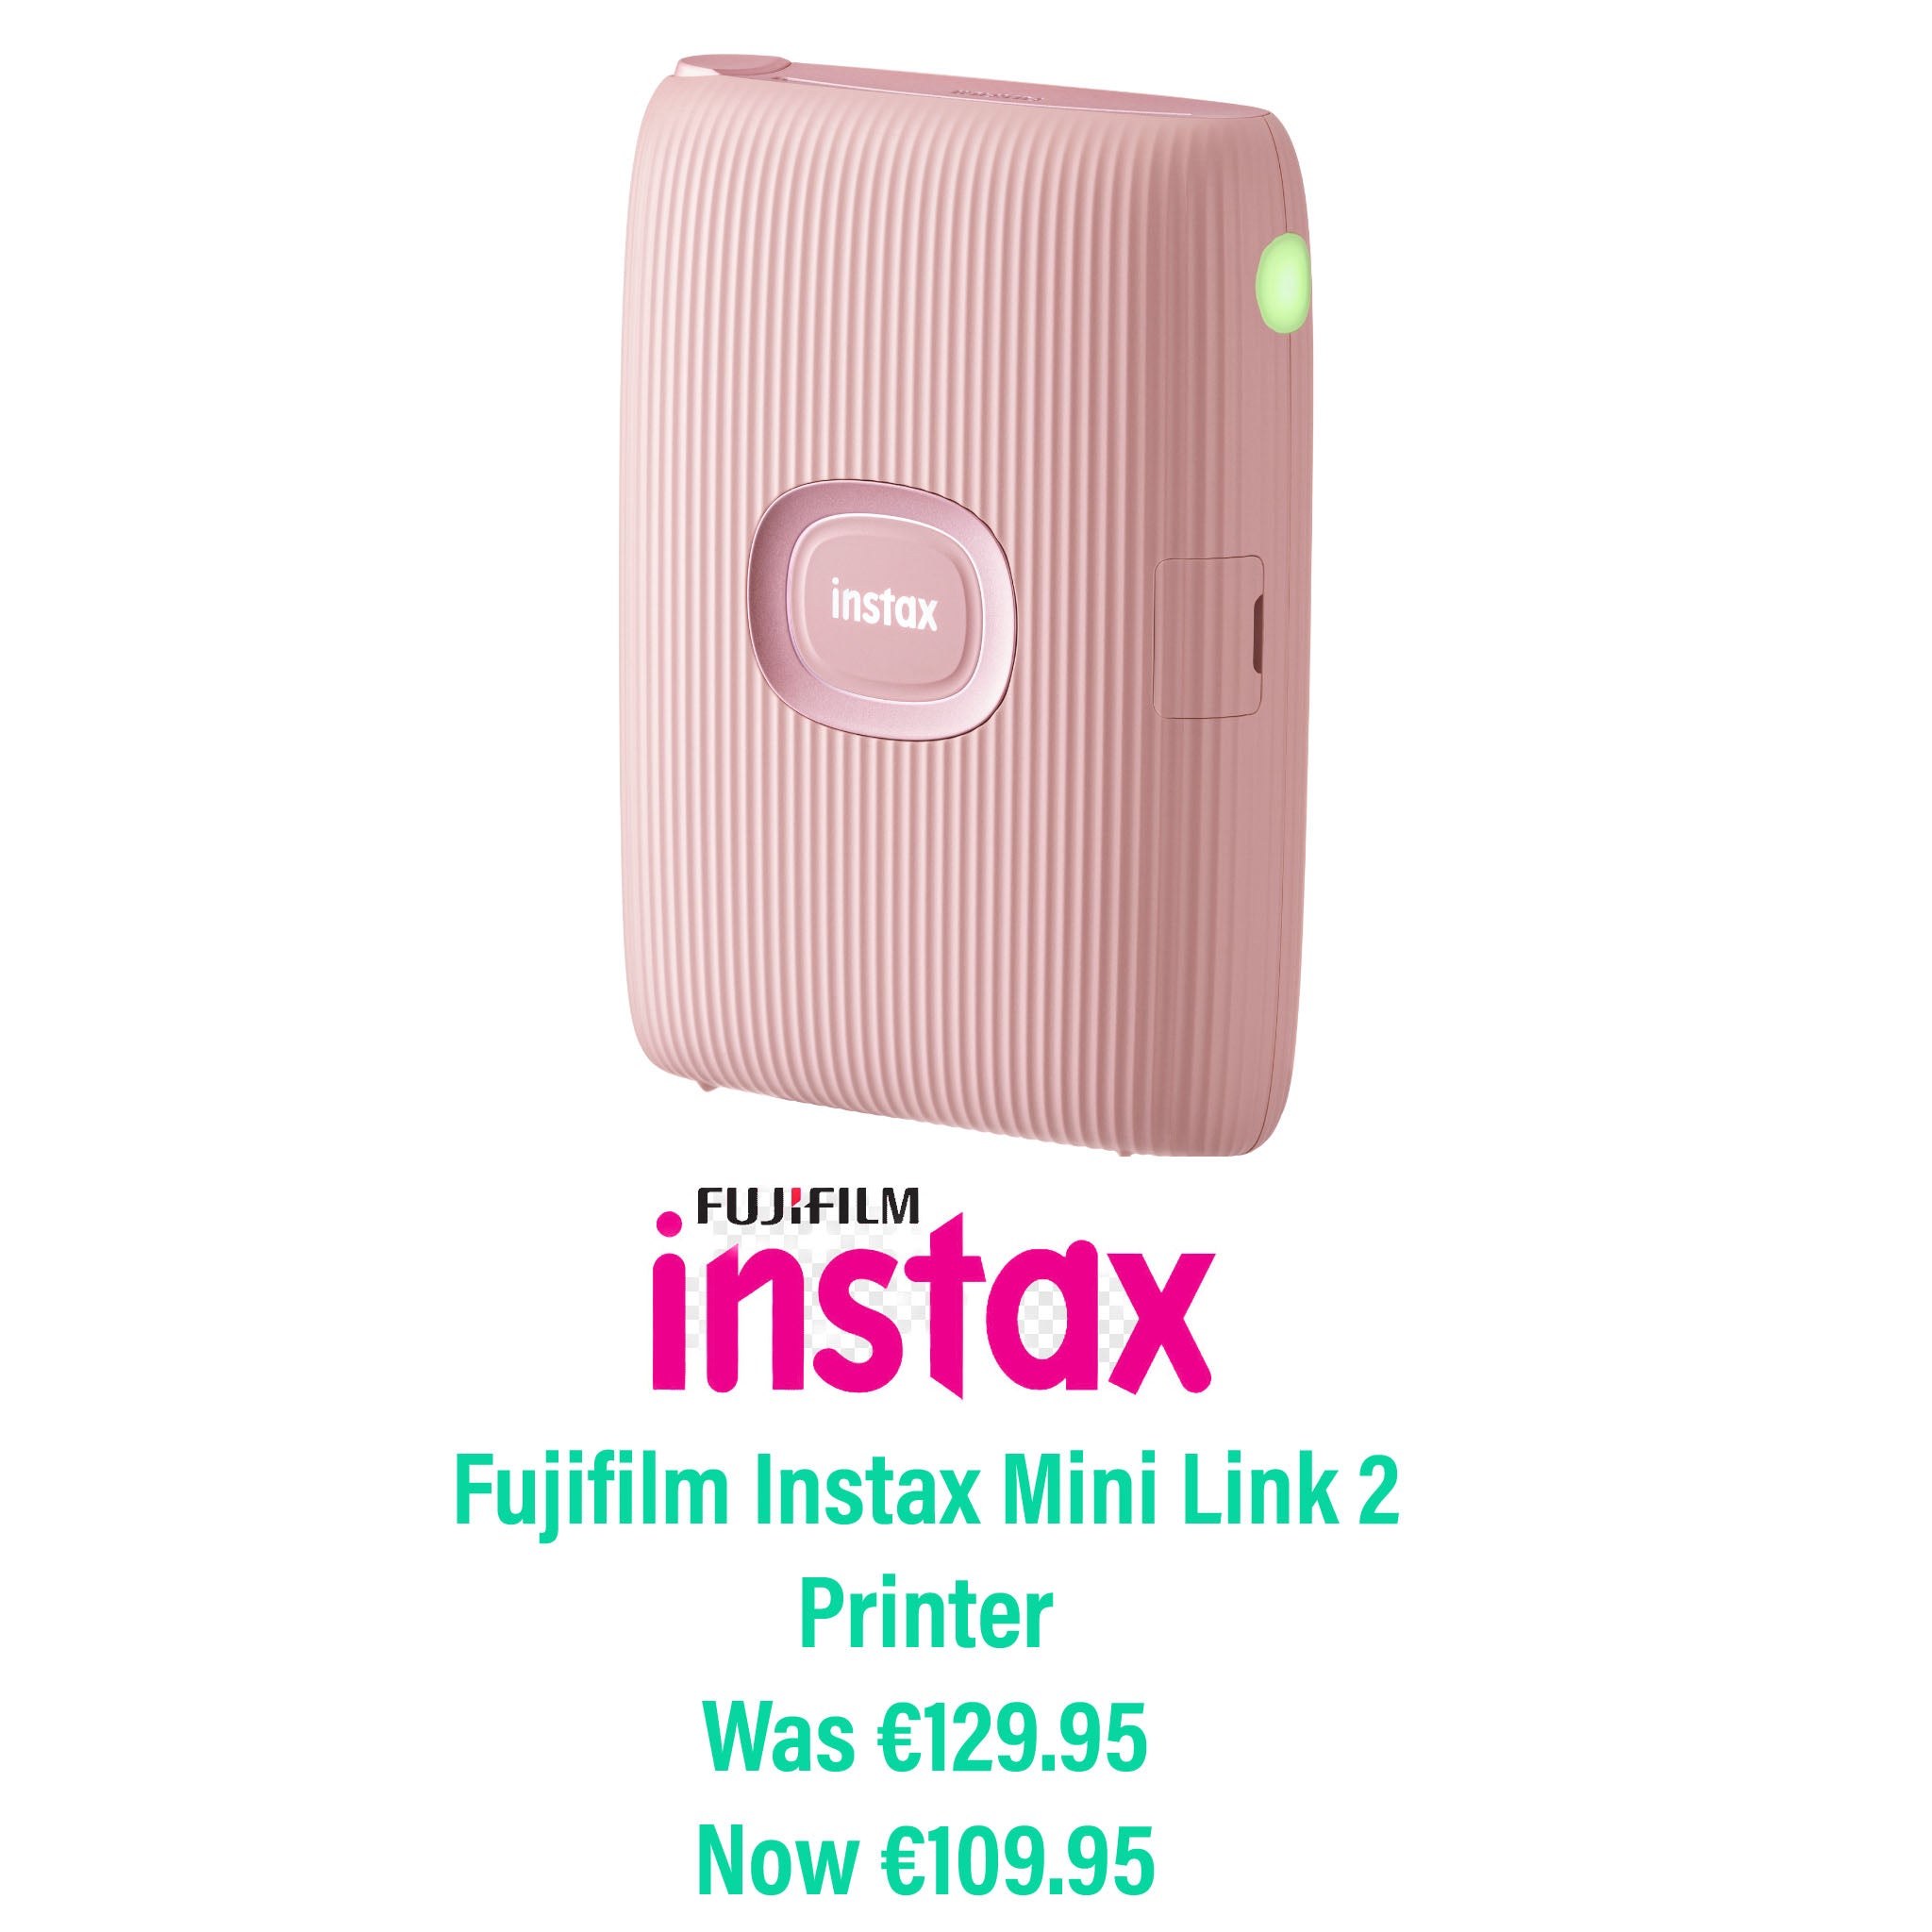 Fujifilm Instax Mini Link 2 Printer